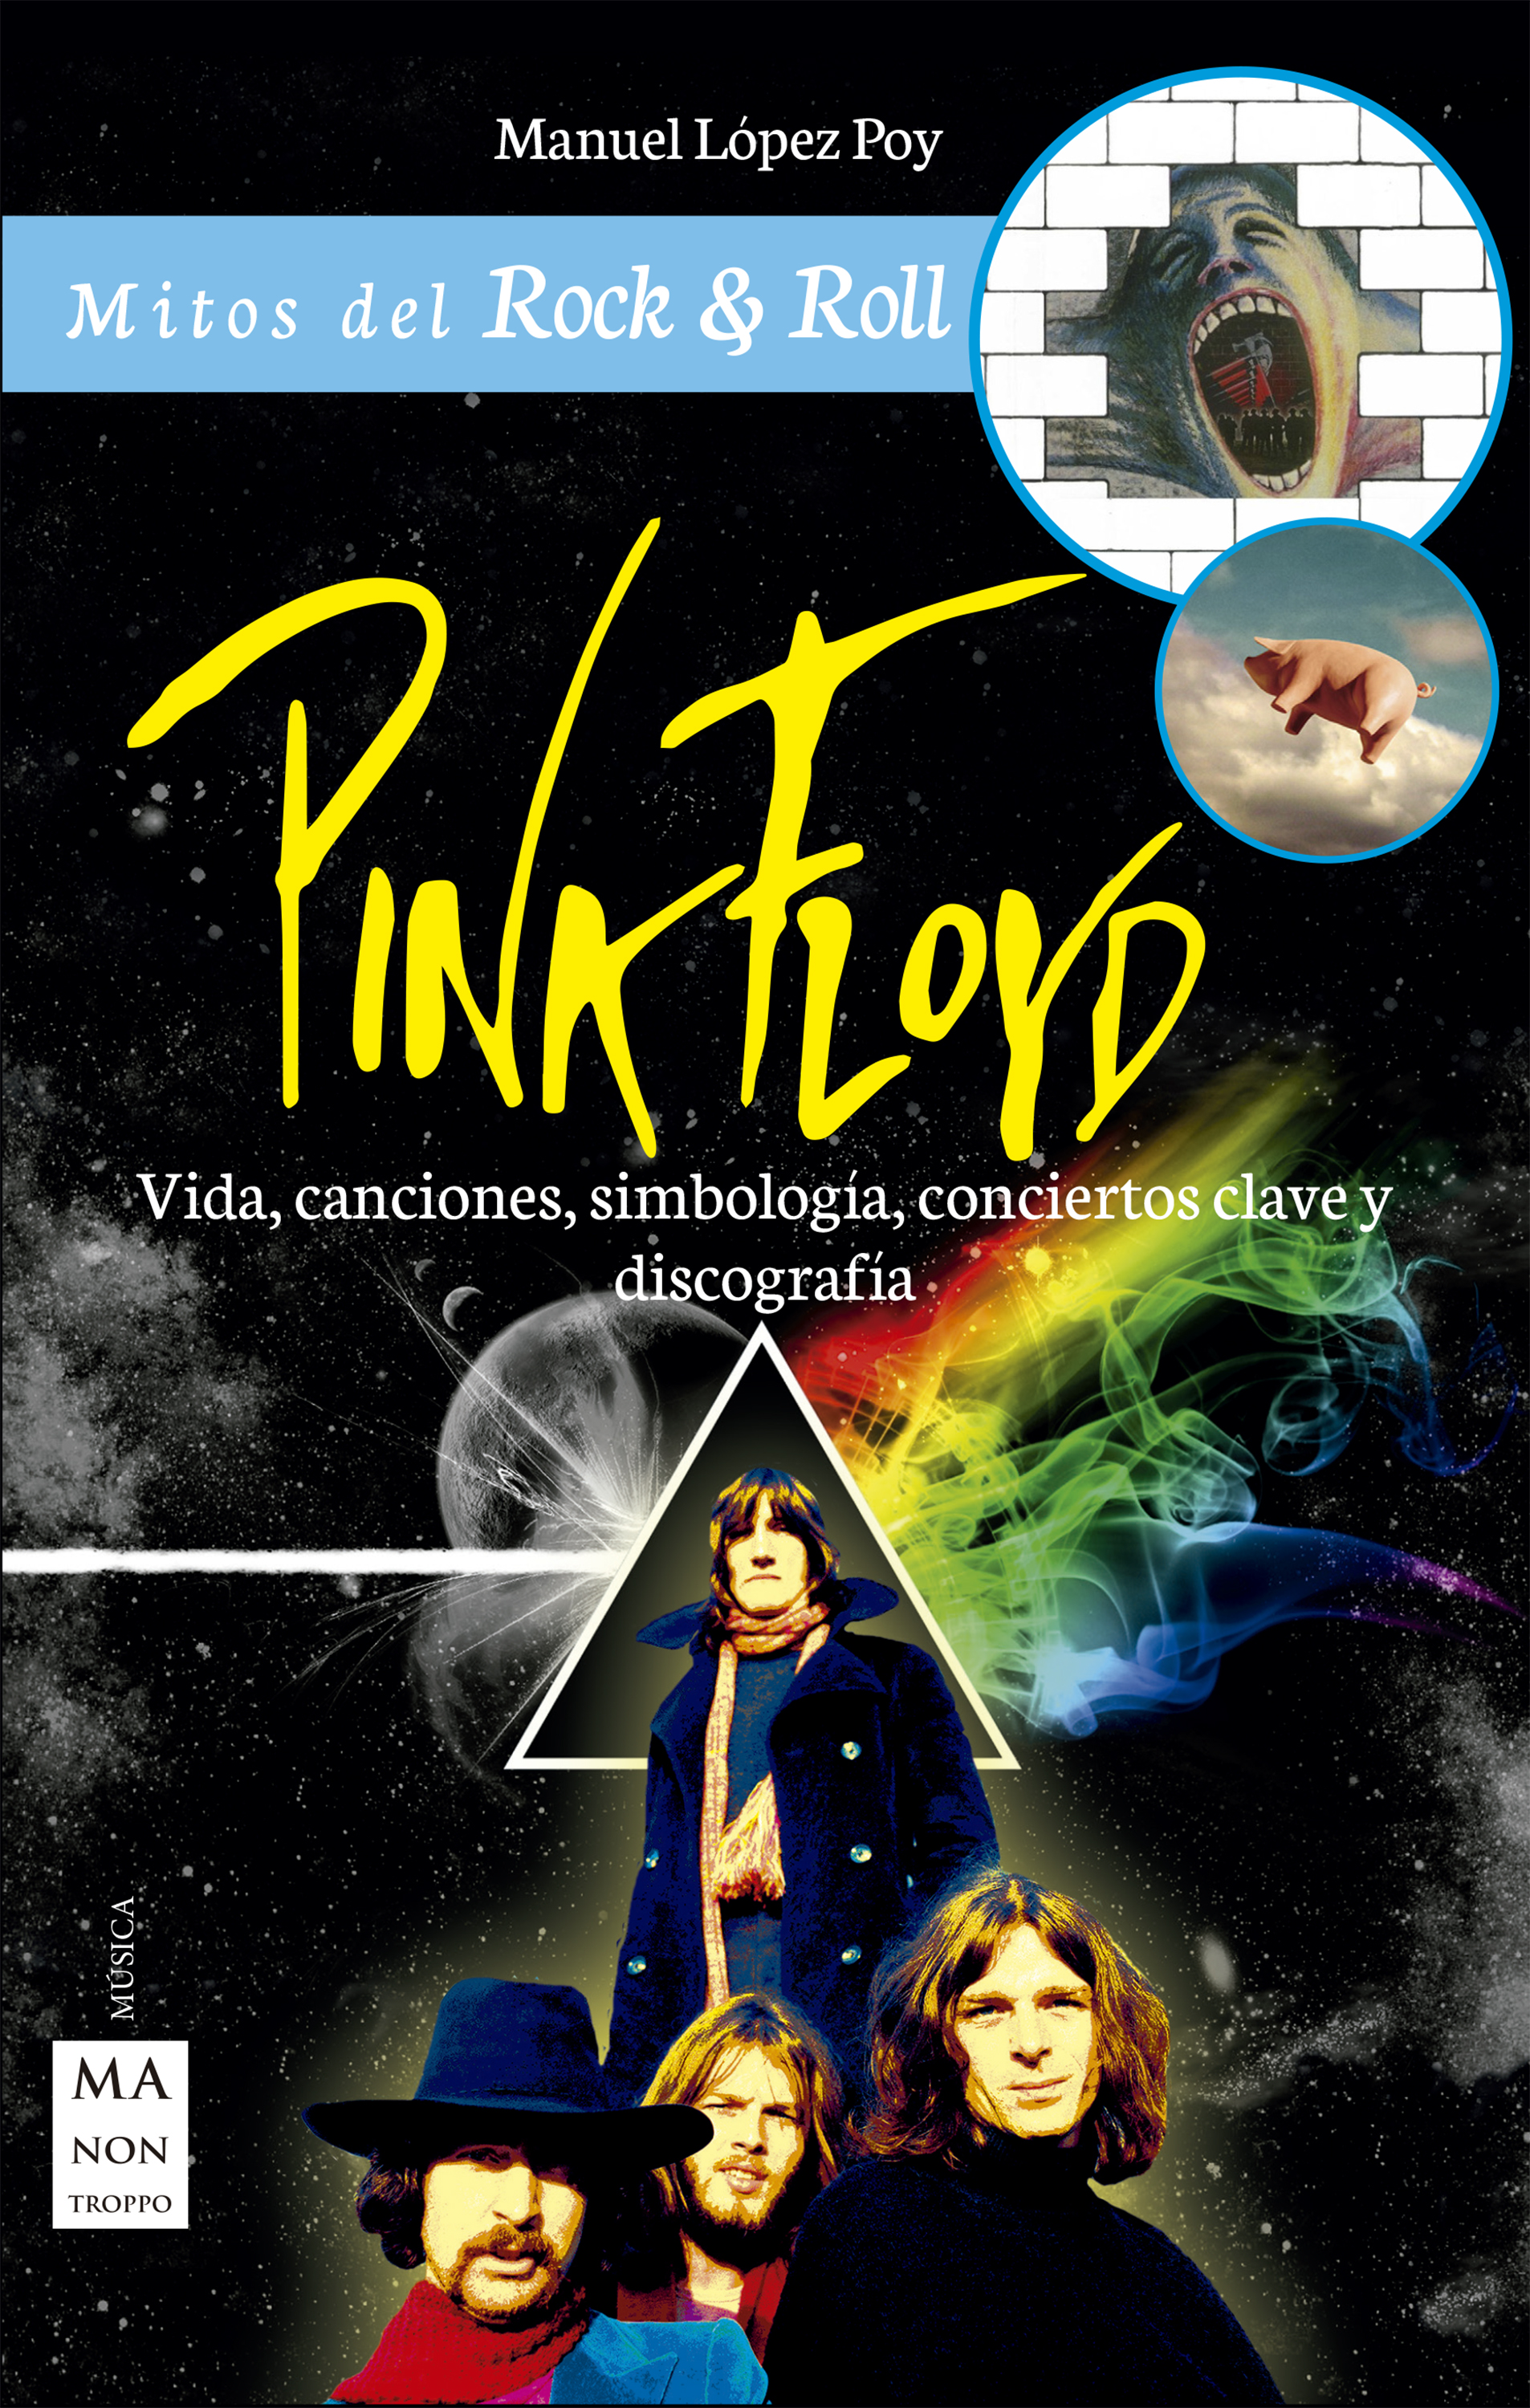 Manuel López Poy Pink Floyd